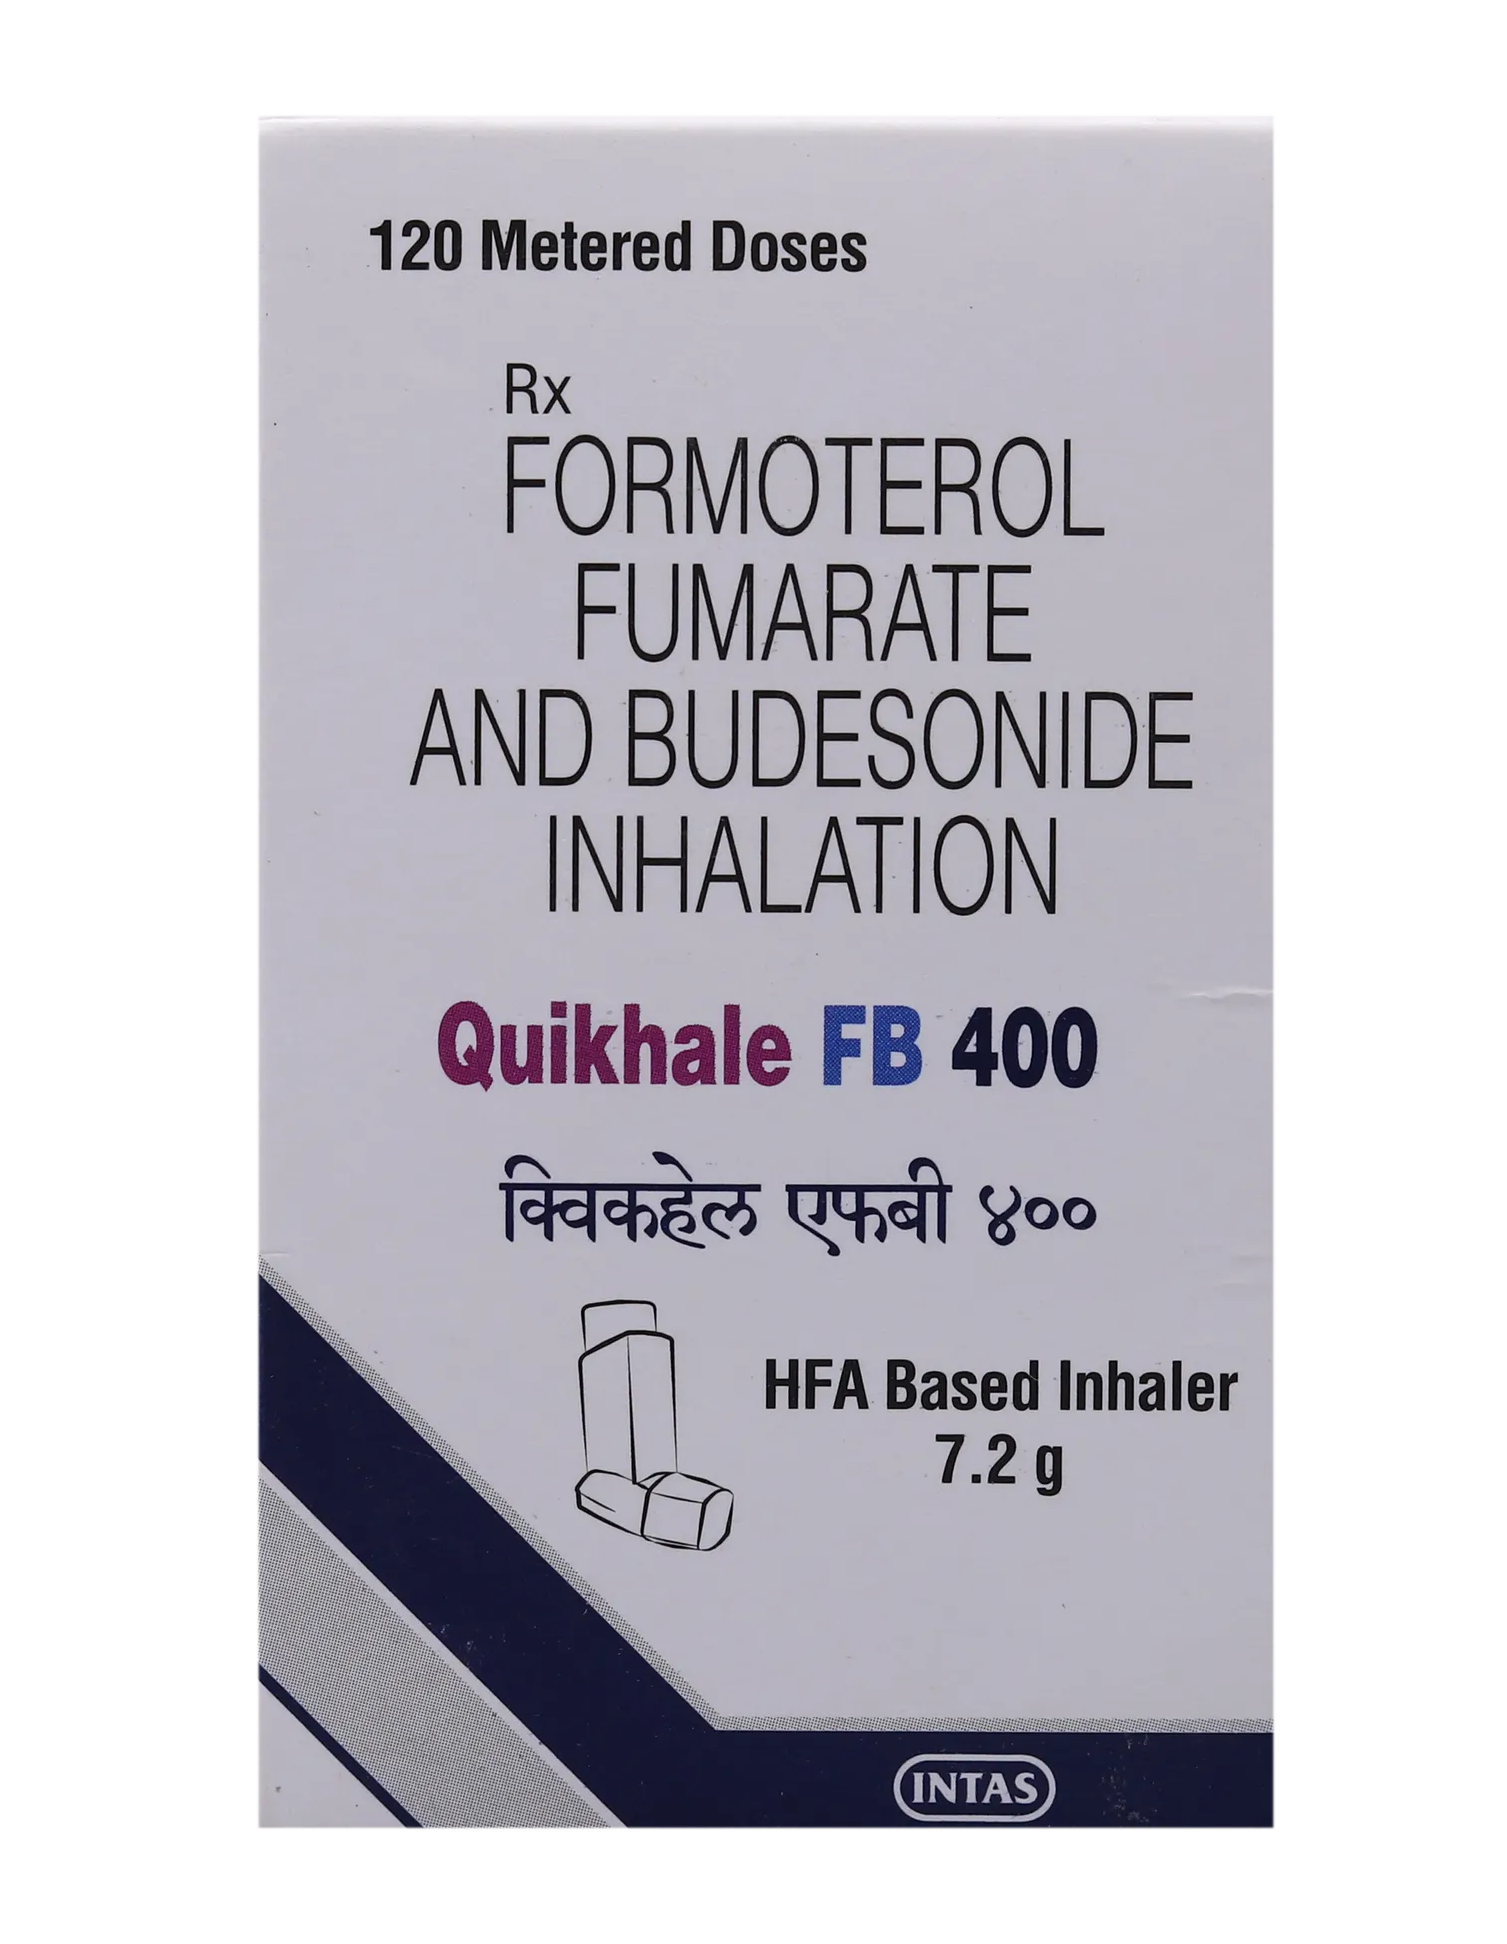 quikhale-fb-400-inhaler